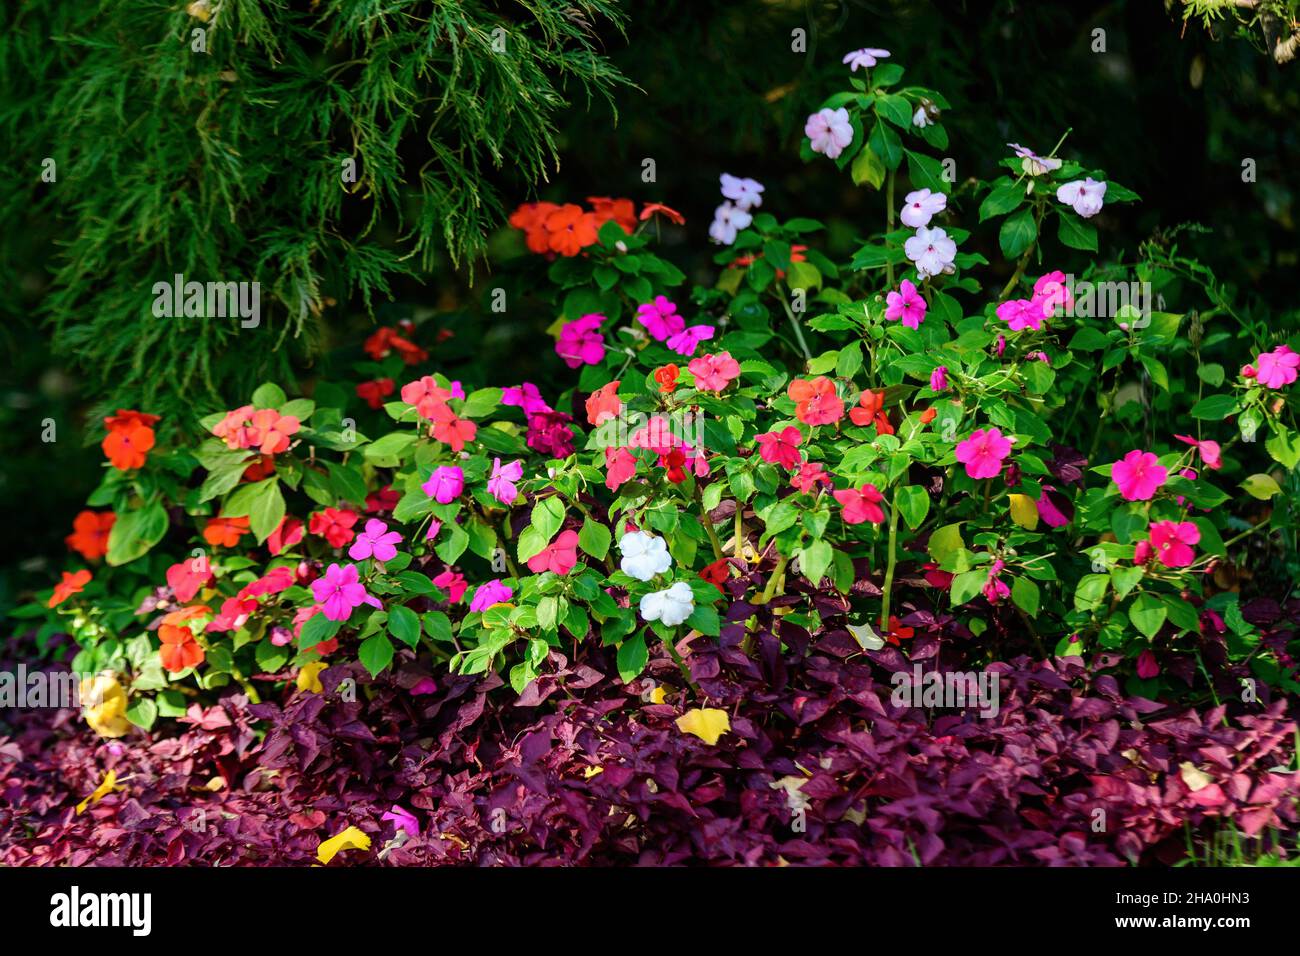 Gran maceta de jardín con flores de color rosa, rojo y blanco Impatiens walleriana conocidas como Lizzie ocupado, balsam, sultana, o impatiens, en flor completa en un Foto de stock